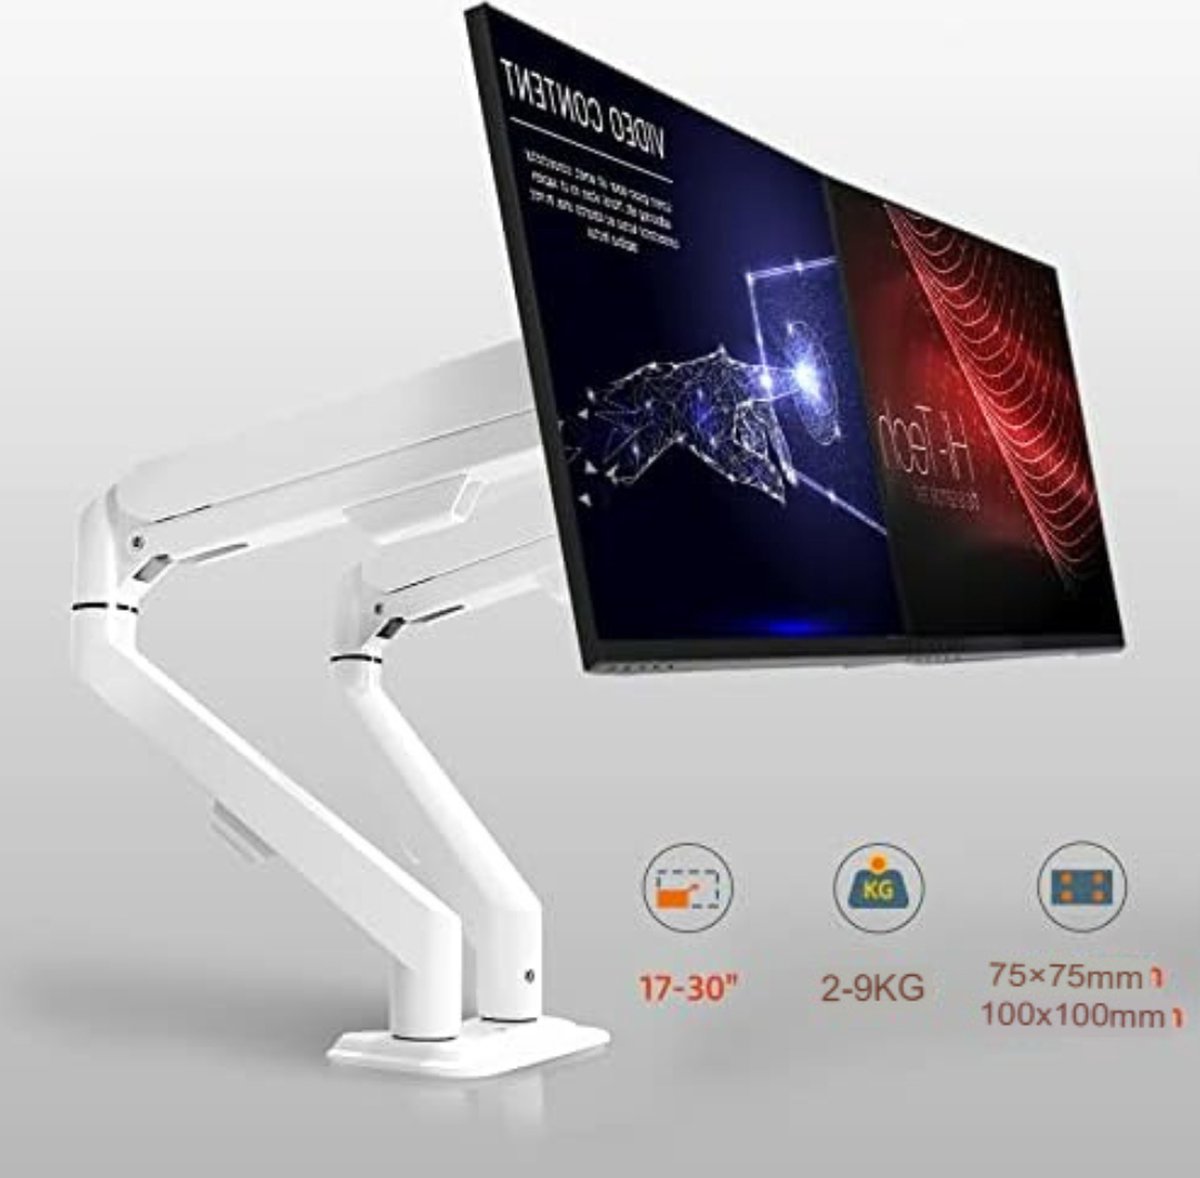 Gratyfied- Monitor Arm 2 Schermen- Monitor Arm 2 Screens- Laptop Arm Standaard- Laptoparm Standaard